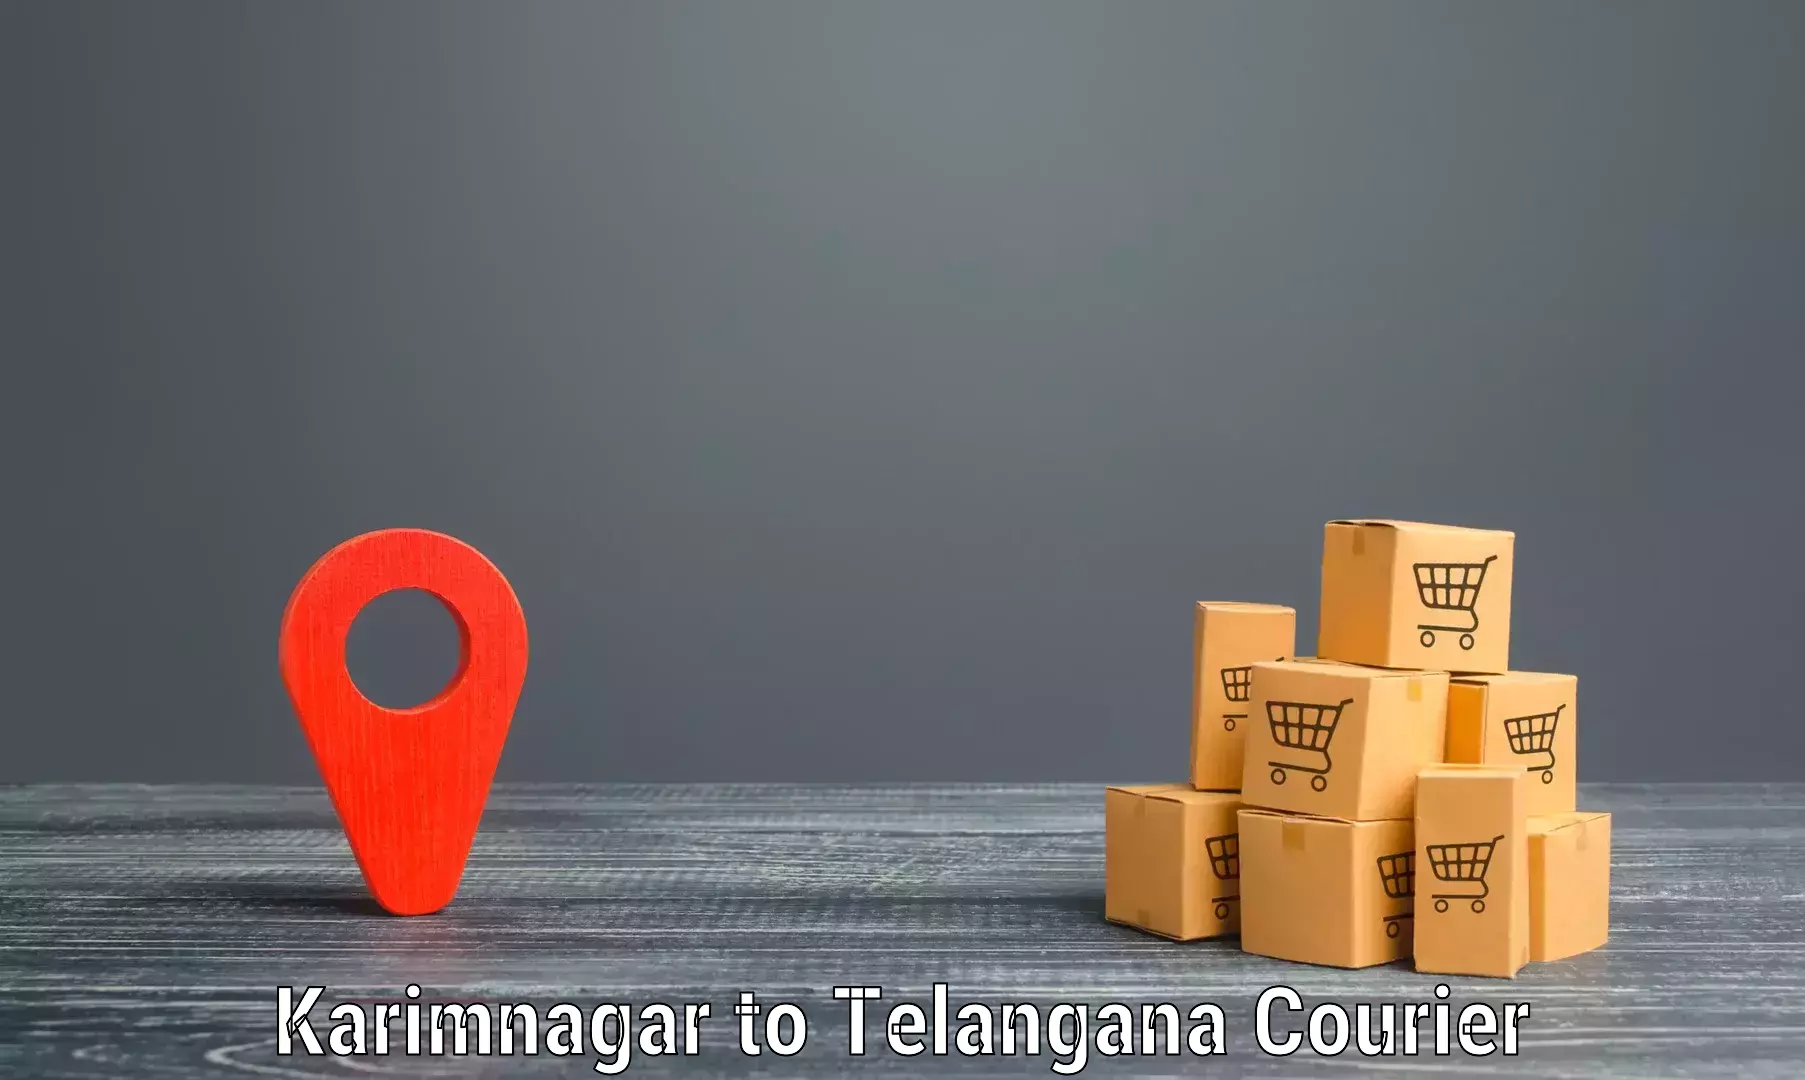 High value parcel delivery in Karimnagar to Kaghaznagar